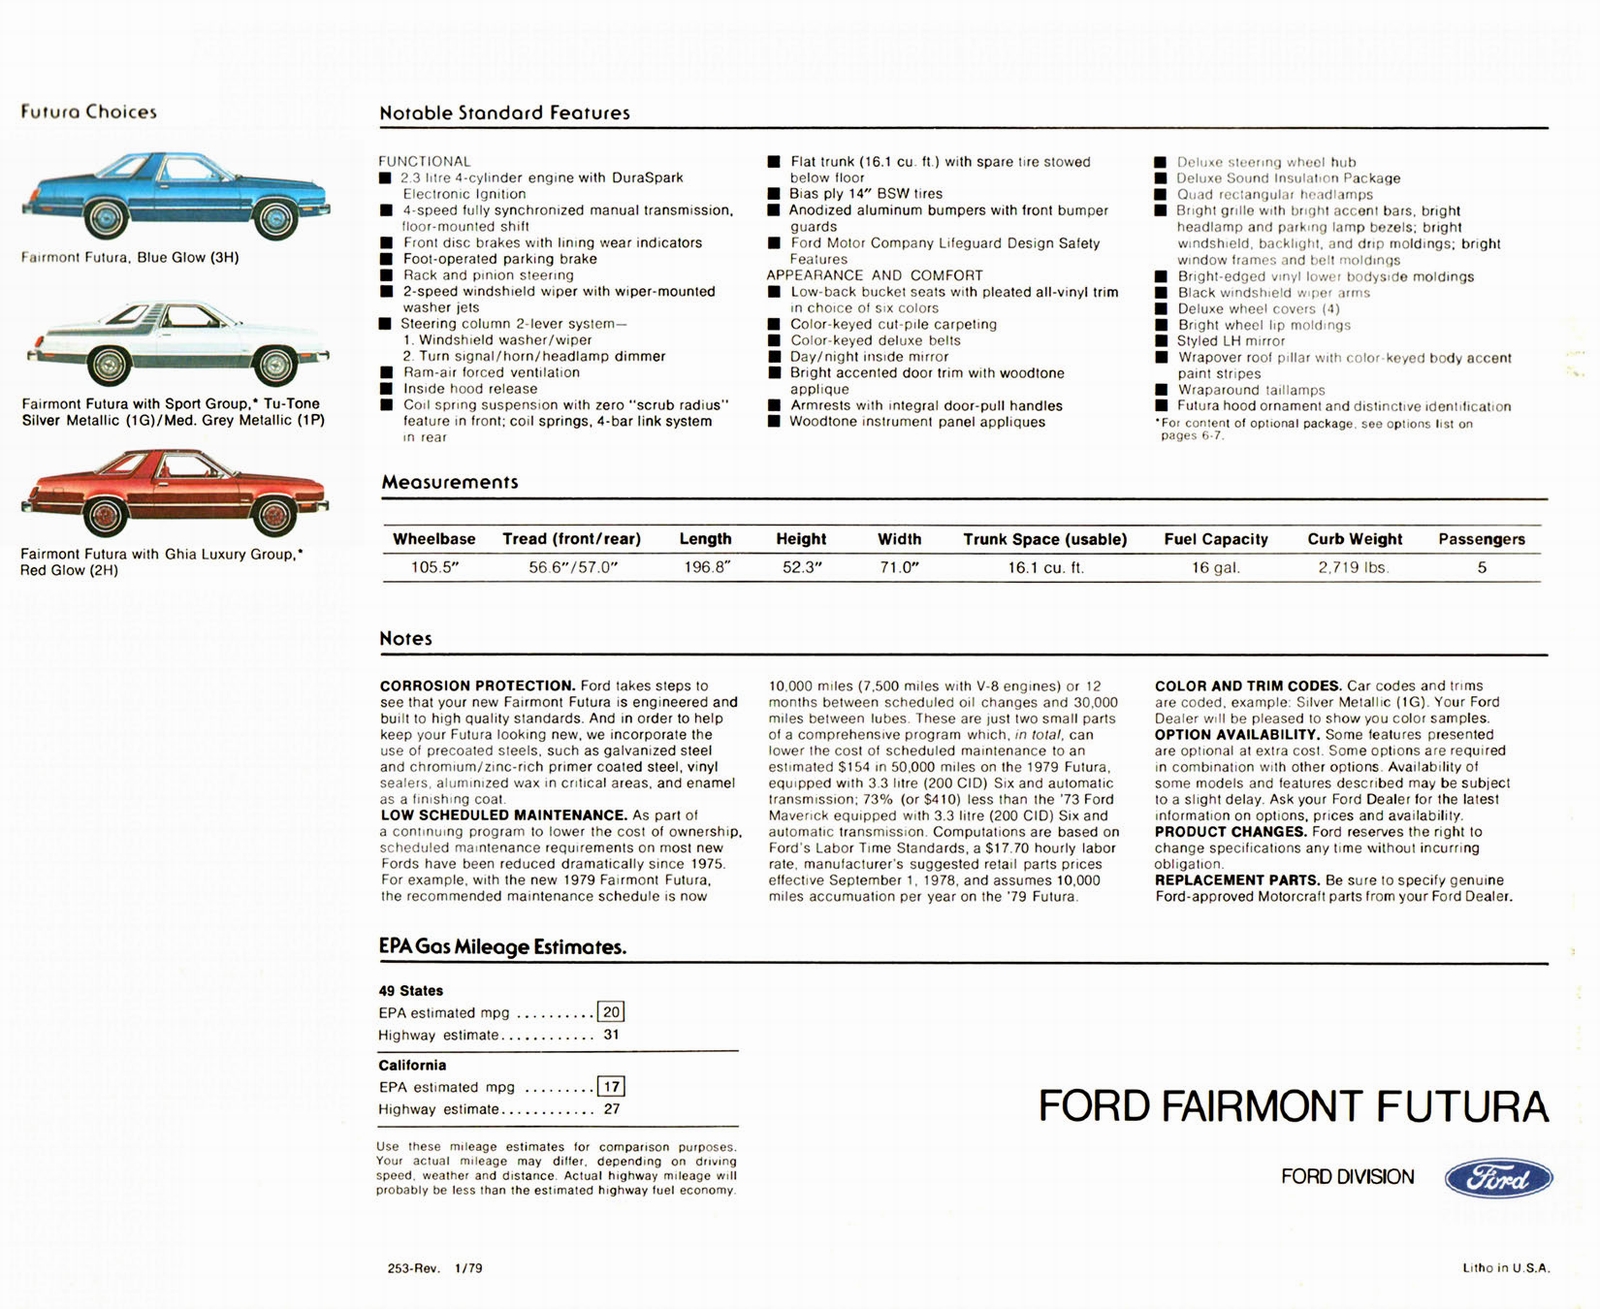 n_1979 Ford Fairmont Futura (Rev)-08.jpg